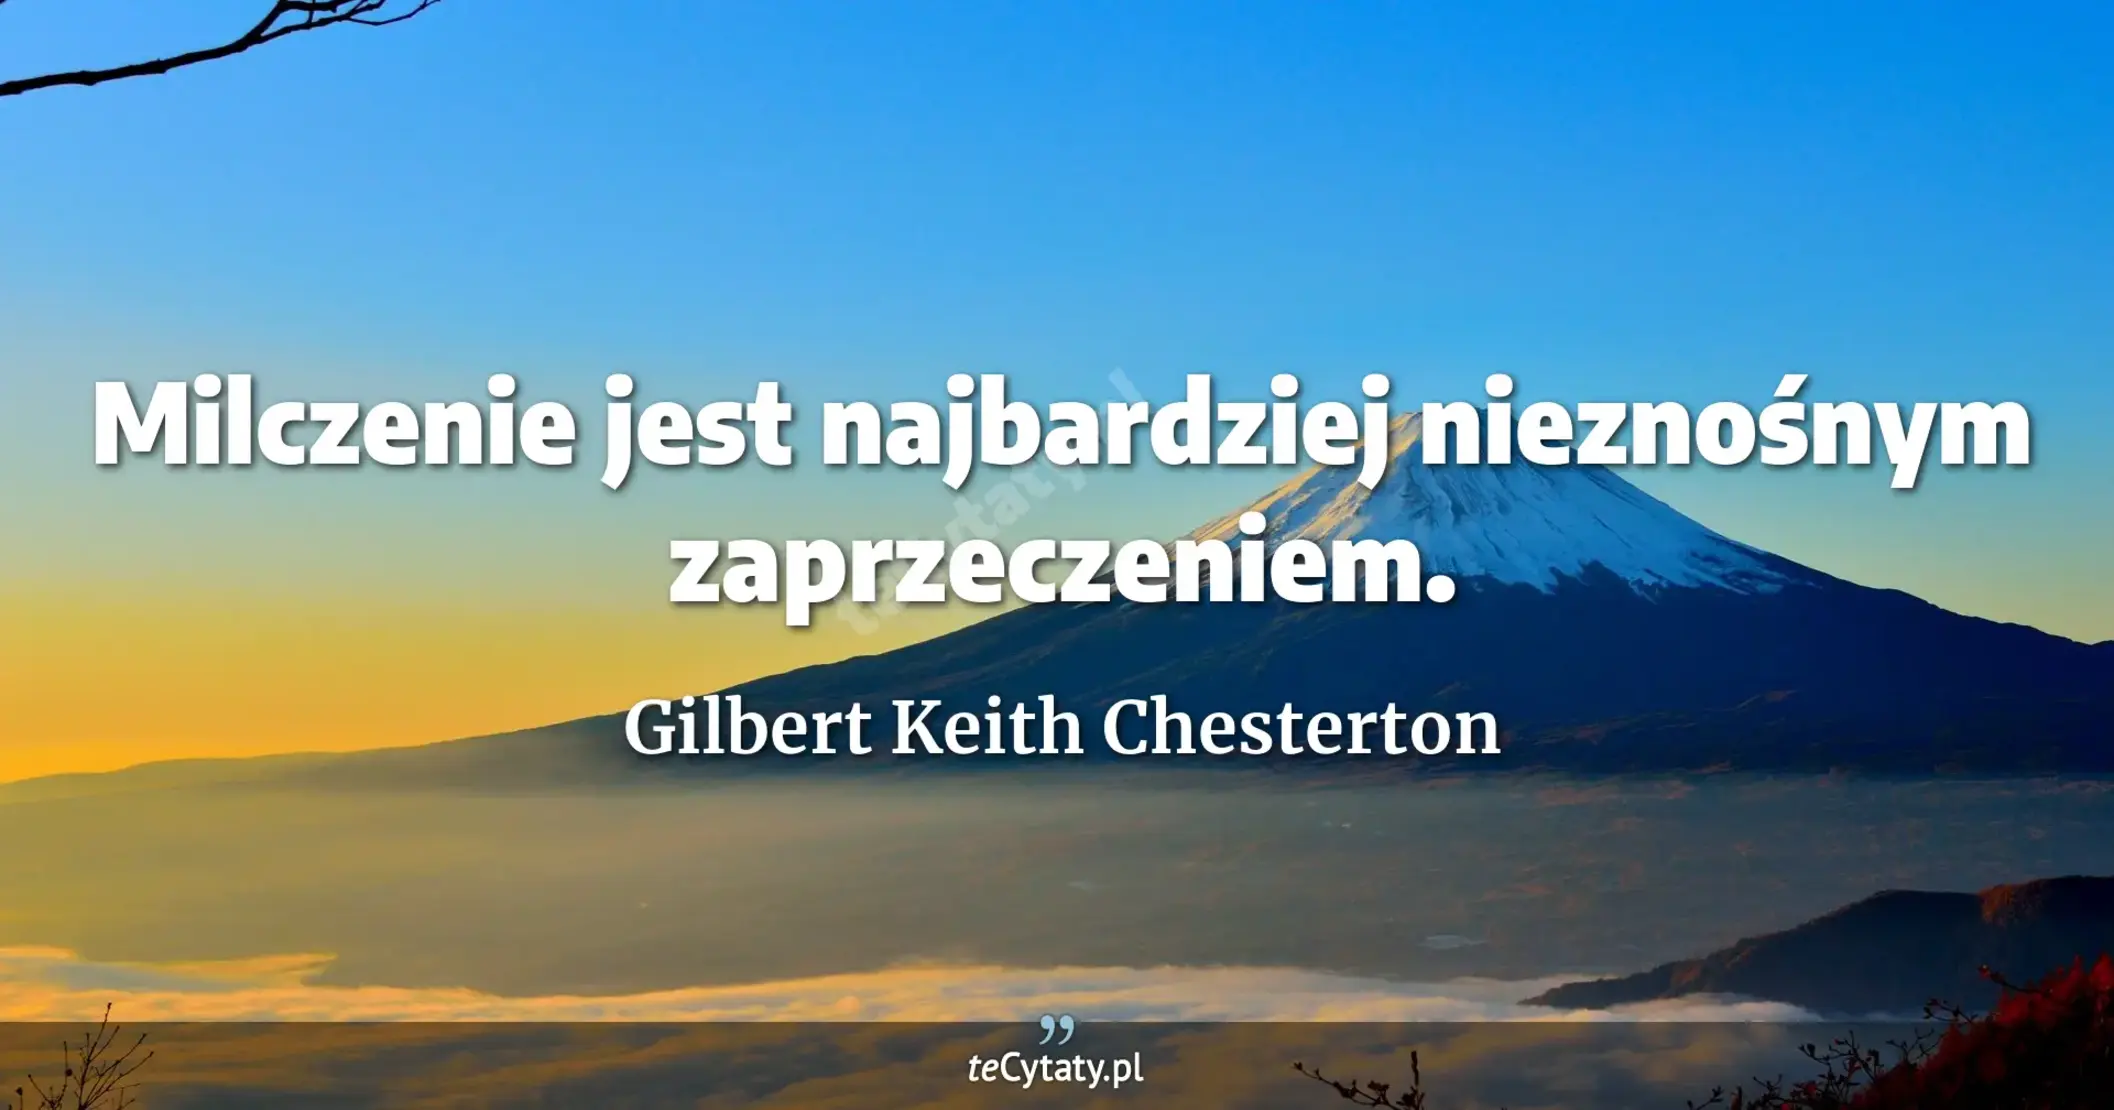 Milczenie jest najbardziej nieznośnym zaprzeczeniem. - Gilbert Keith Chesterton